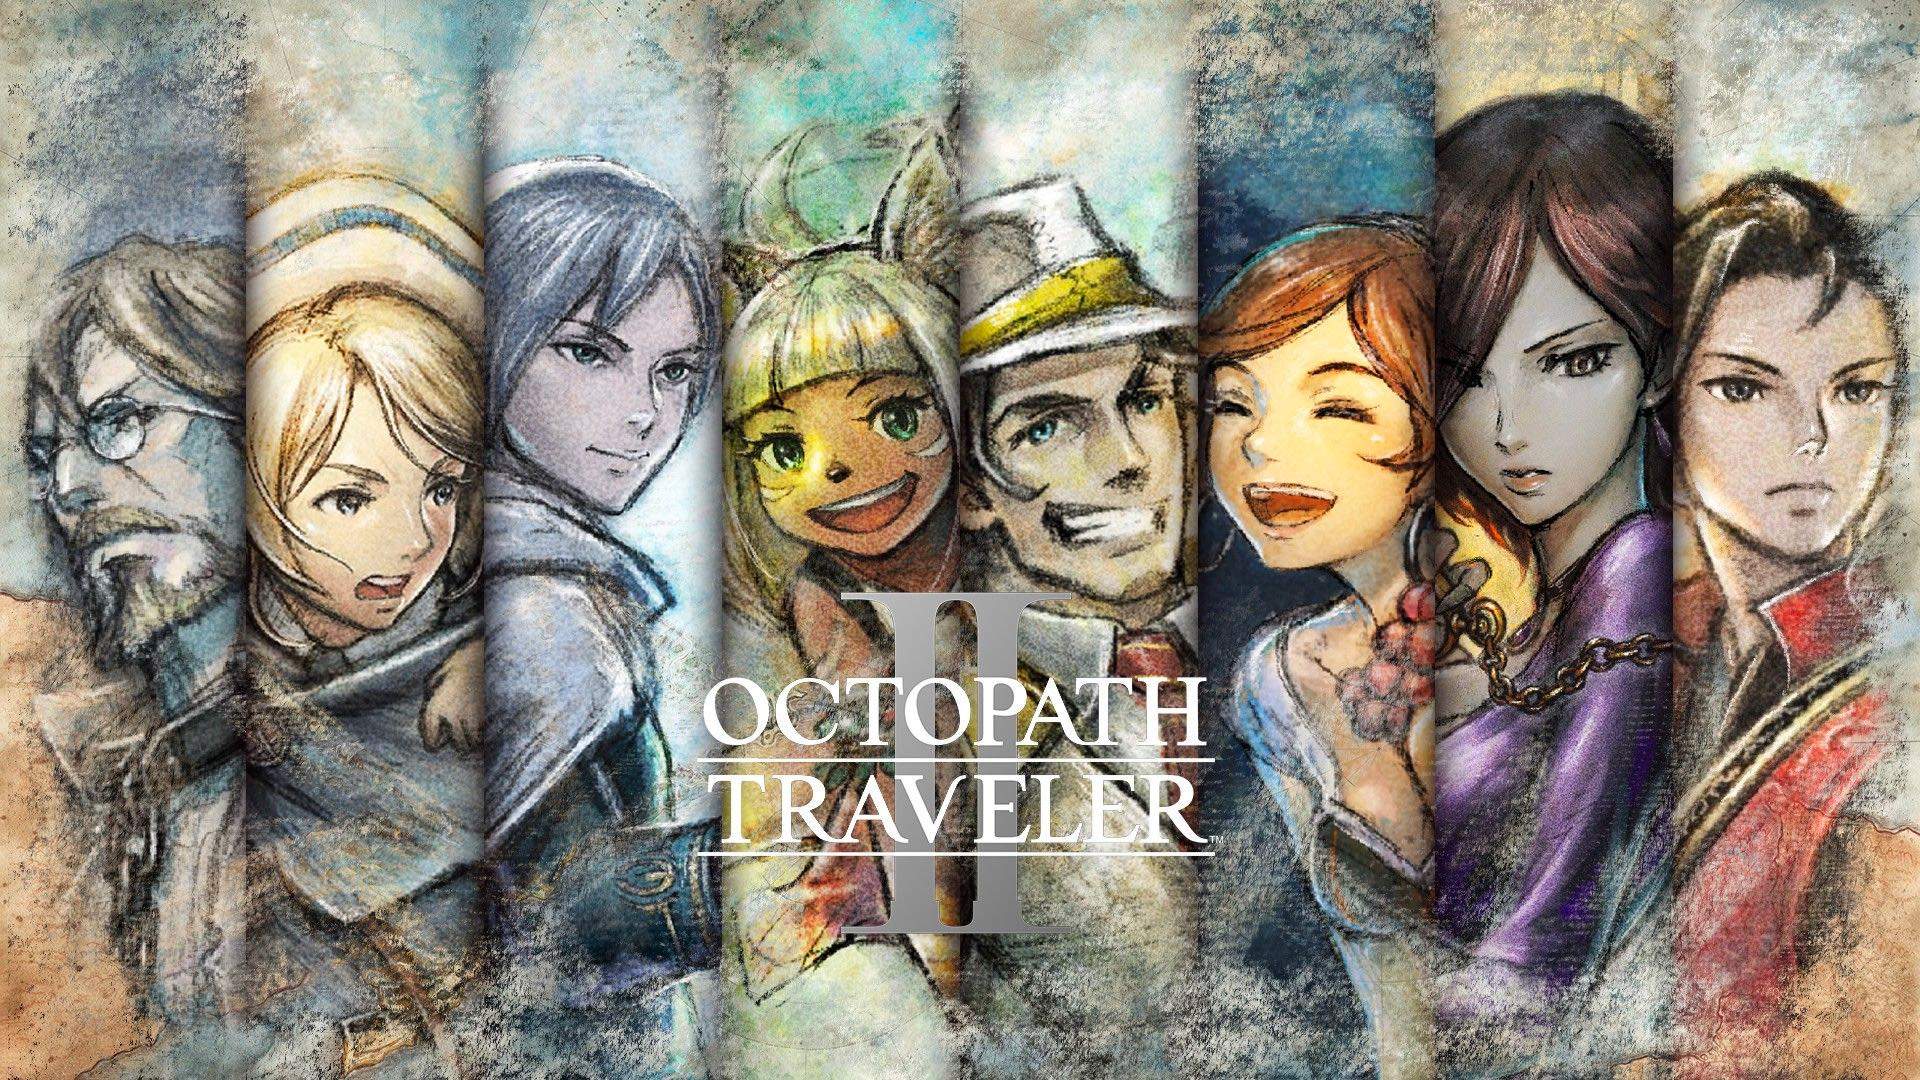 Die acht Charaktere des Spiel hinter dem Logo von OCTOPATH TRAVELER II.